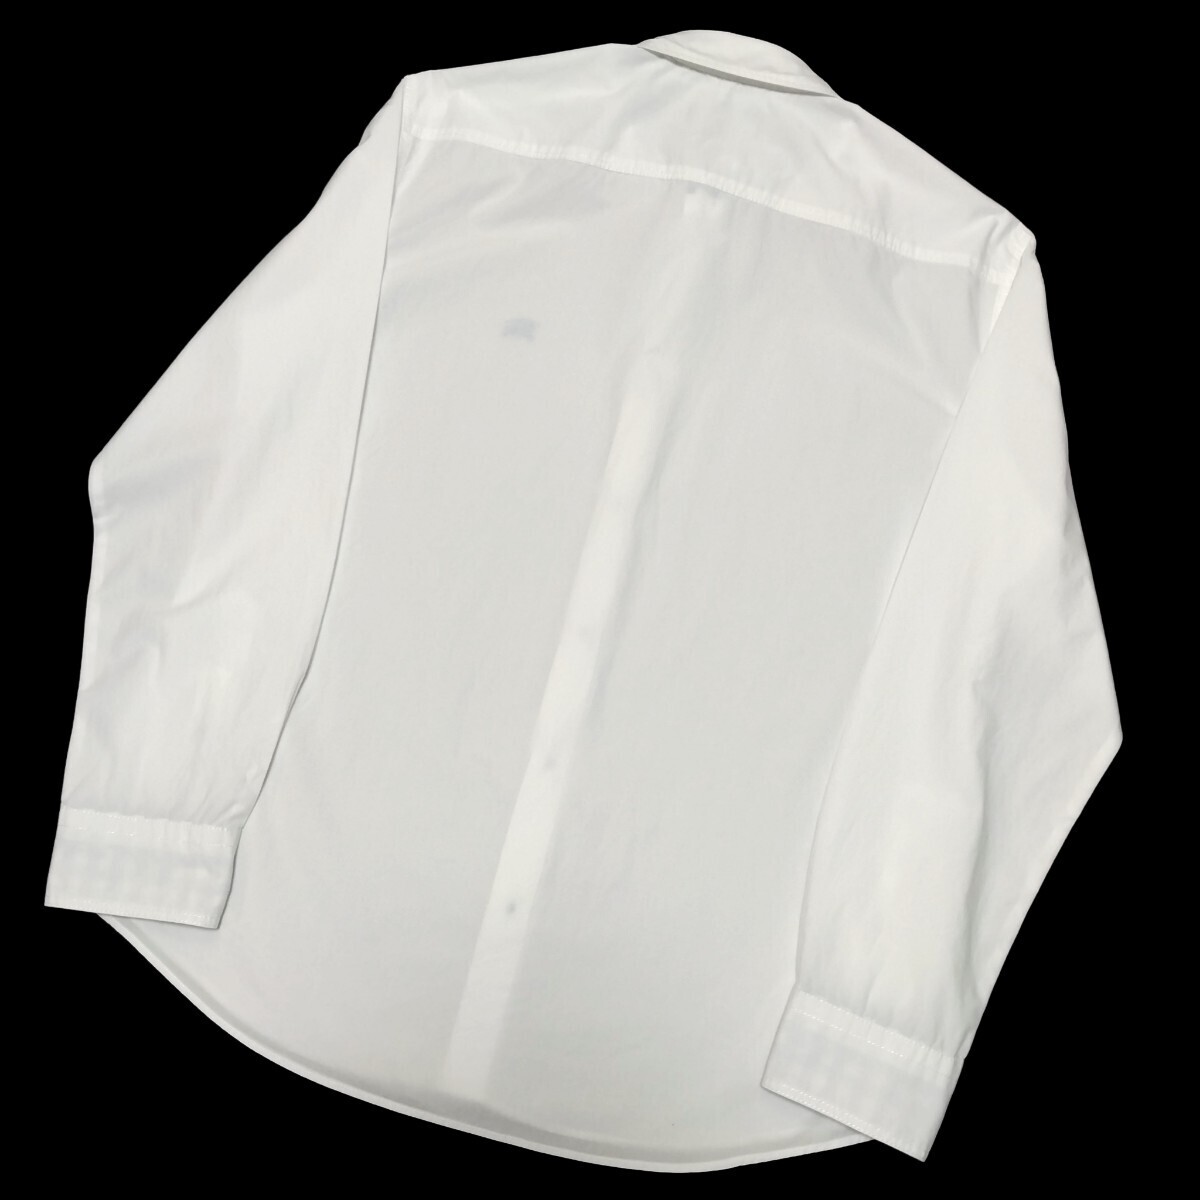  Burberry Black Label # шея вокруг / манжеты обратная сторона серебристый жевательная резинка проверка шланг вышивка 3(L) белый рубашка с длинным рукавом BURBERRY BLACK LABEL#